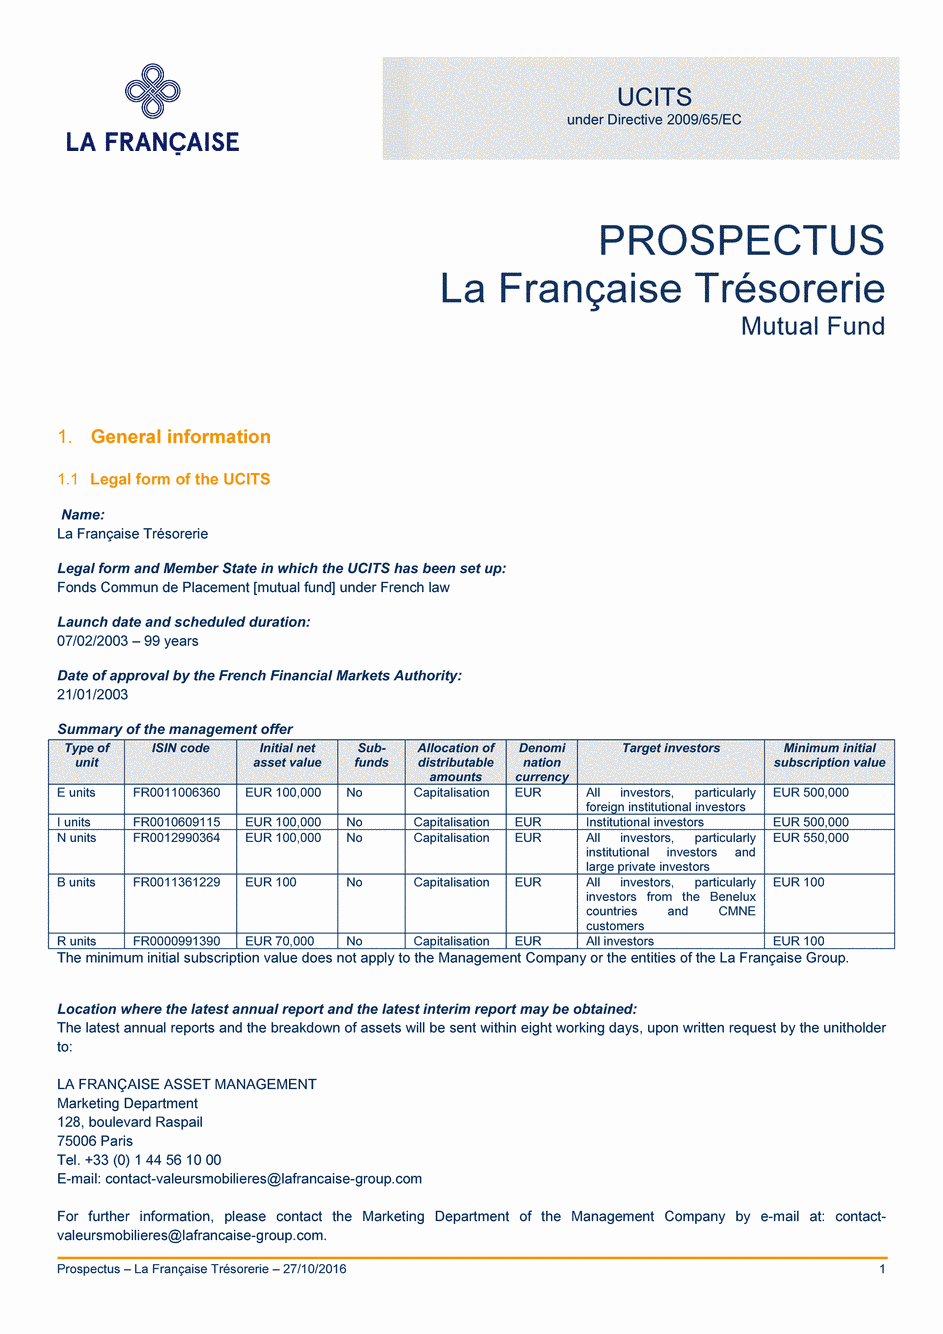 Prospectus La Française Trésorerie - Part I - 27/10/2016 - Anglais